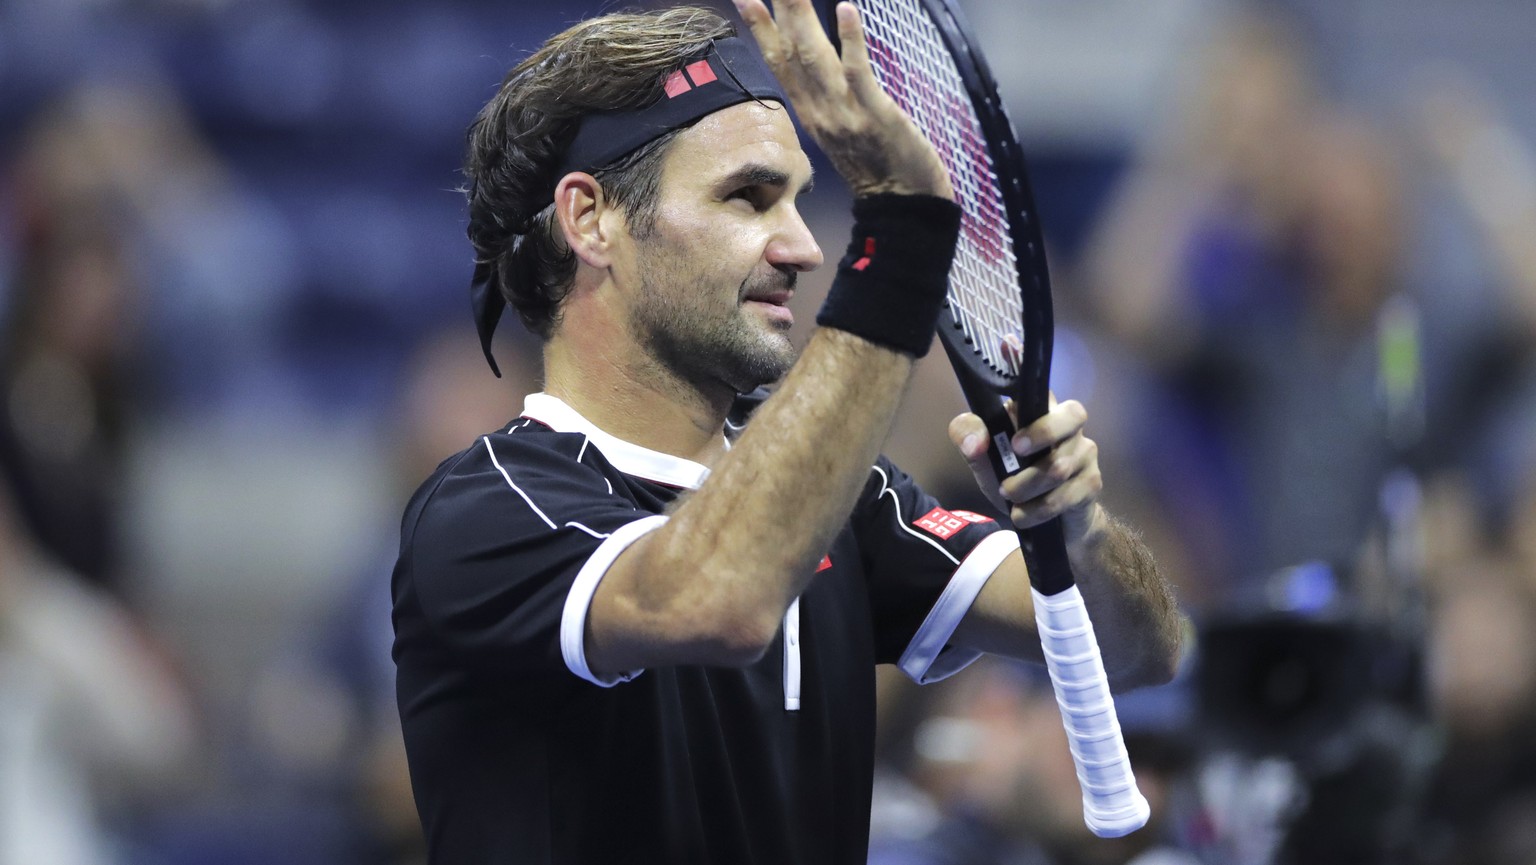 Mit 38 Jahren immer noch fit: Roger Federer